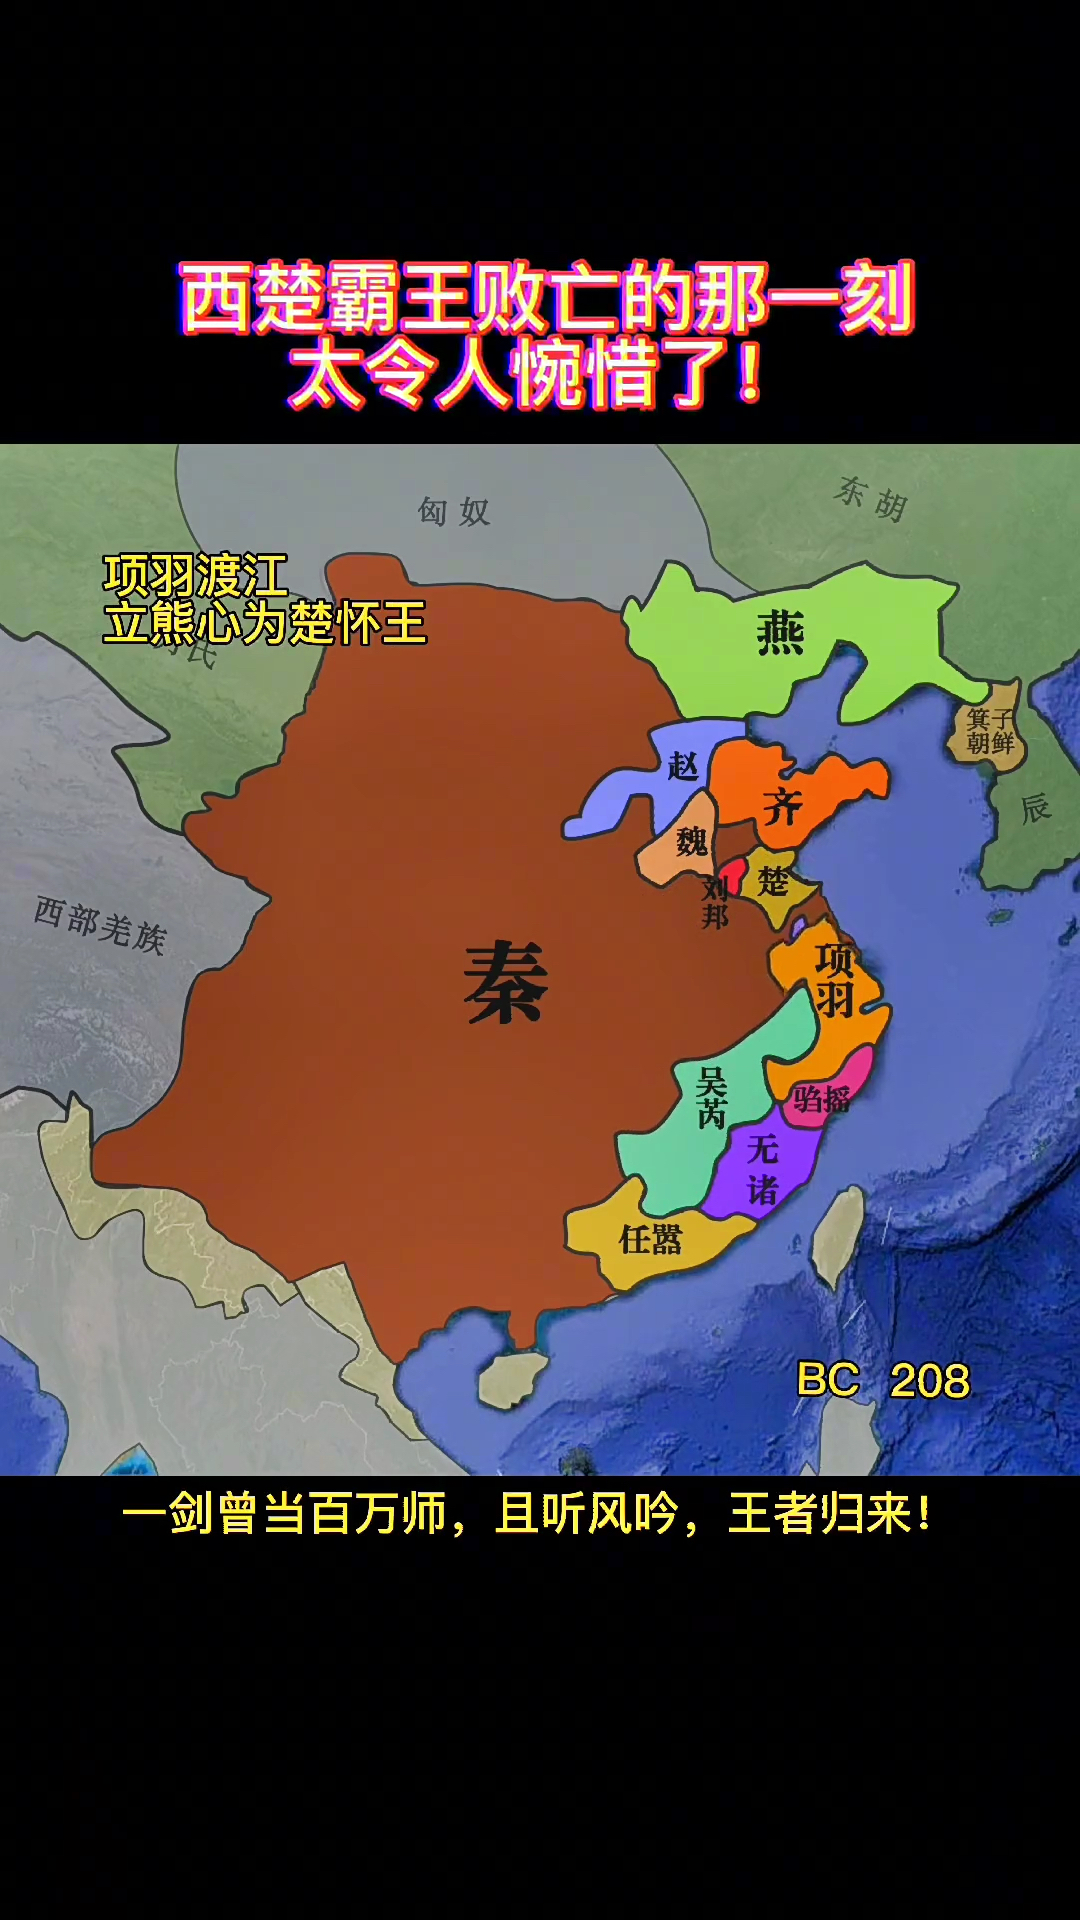 秦朝末年到楚汉之争版图演变全过程,刘邦的强势崛起很正能量!